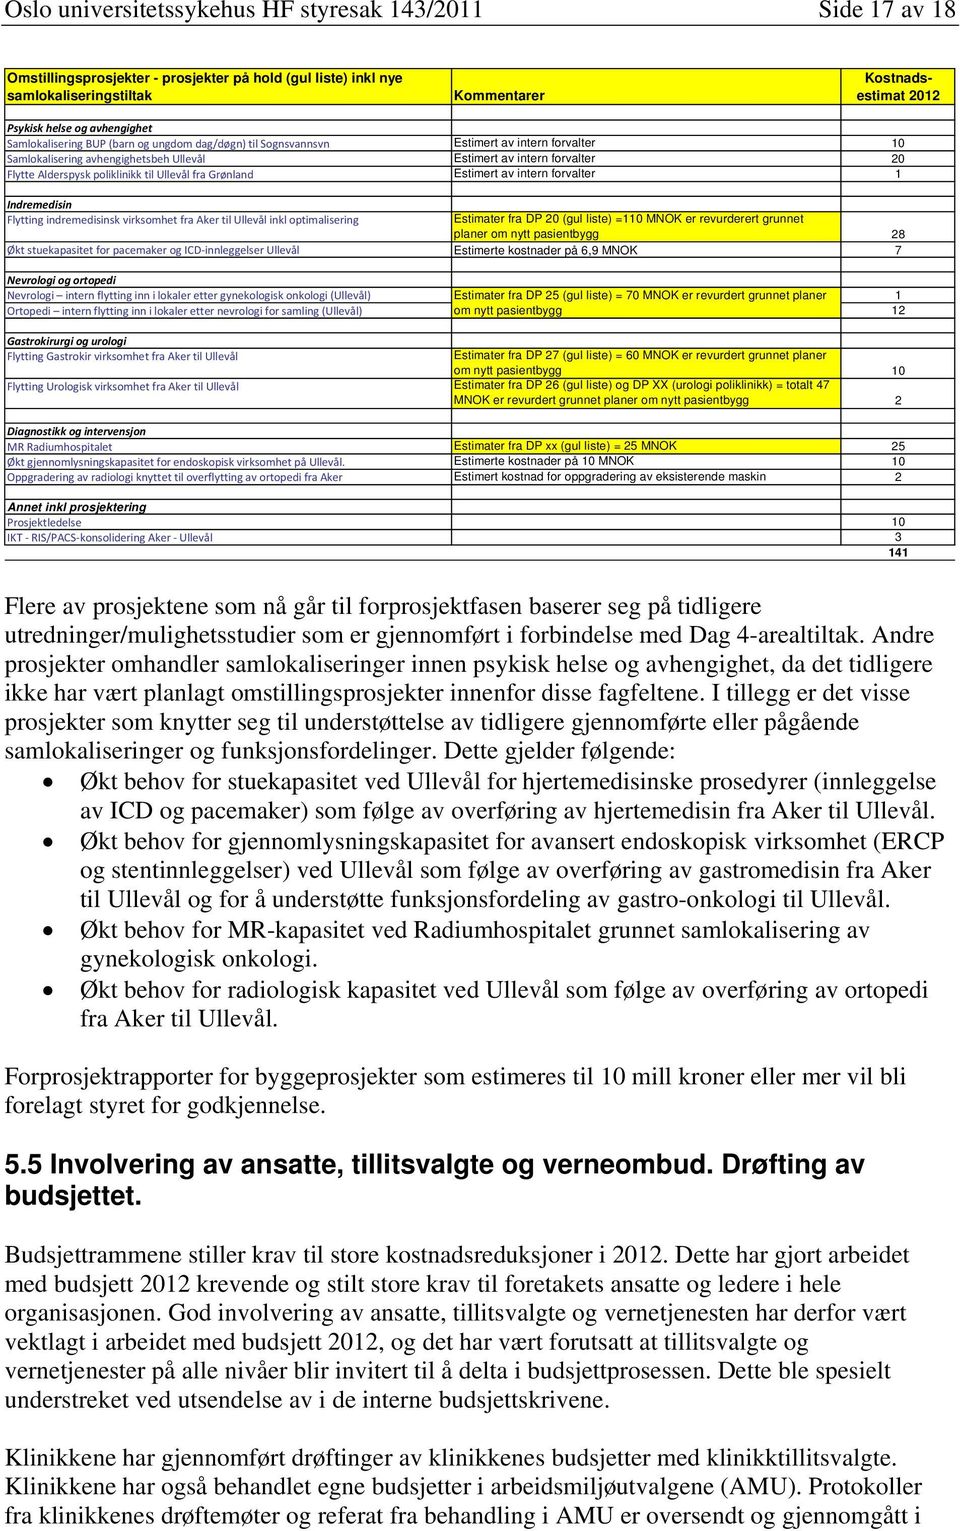 poliklinikk til Ullevål fra Grønland Estimert av intern forvalter 1 Indremedisin Flytting indremedisinsk virksomhet fra Aker til Ullevål inkl optimalisering Estimater fra DP 20 (gul liste) =110 MNOK